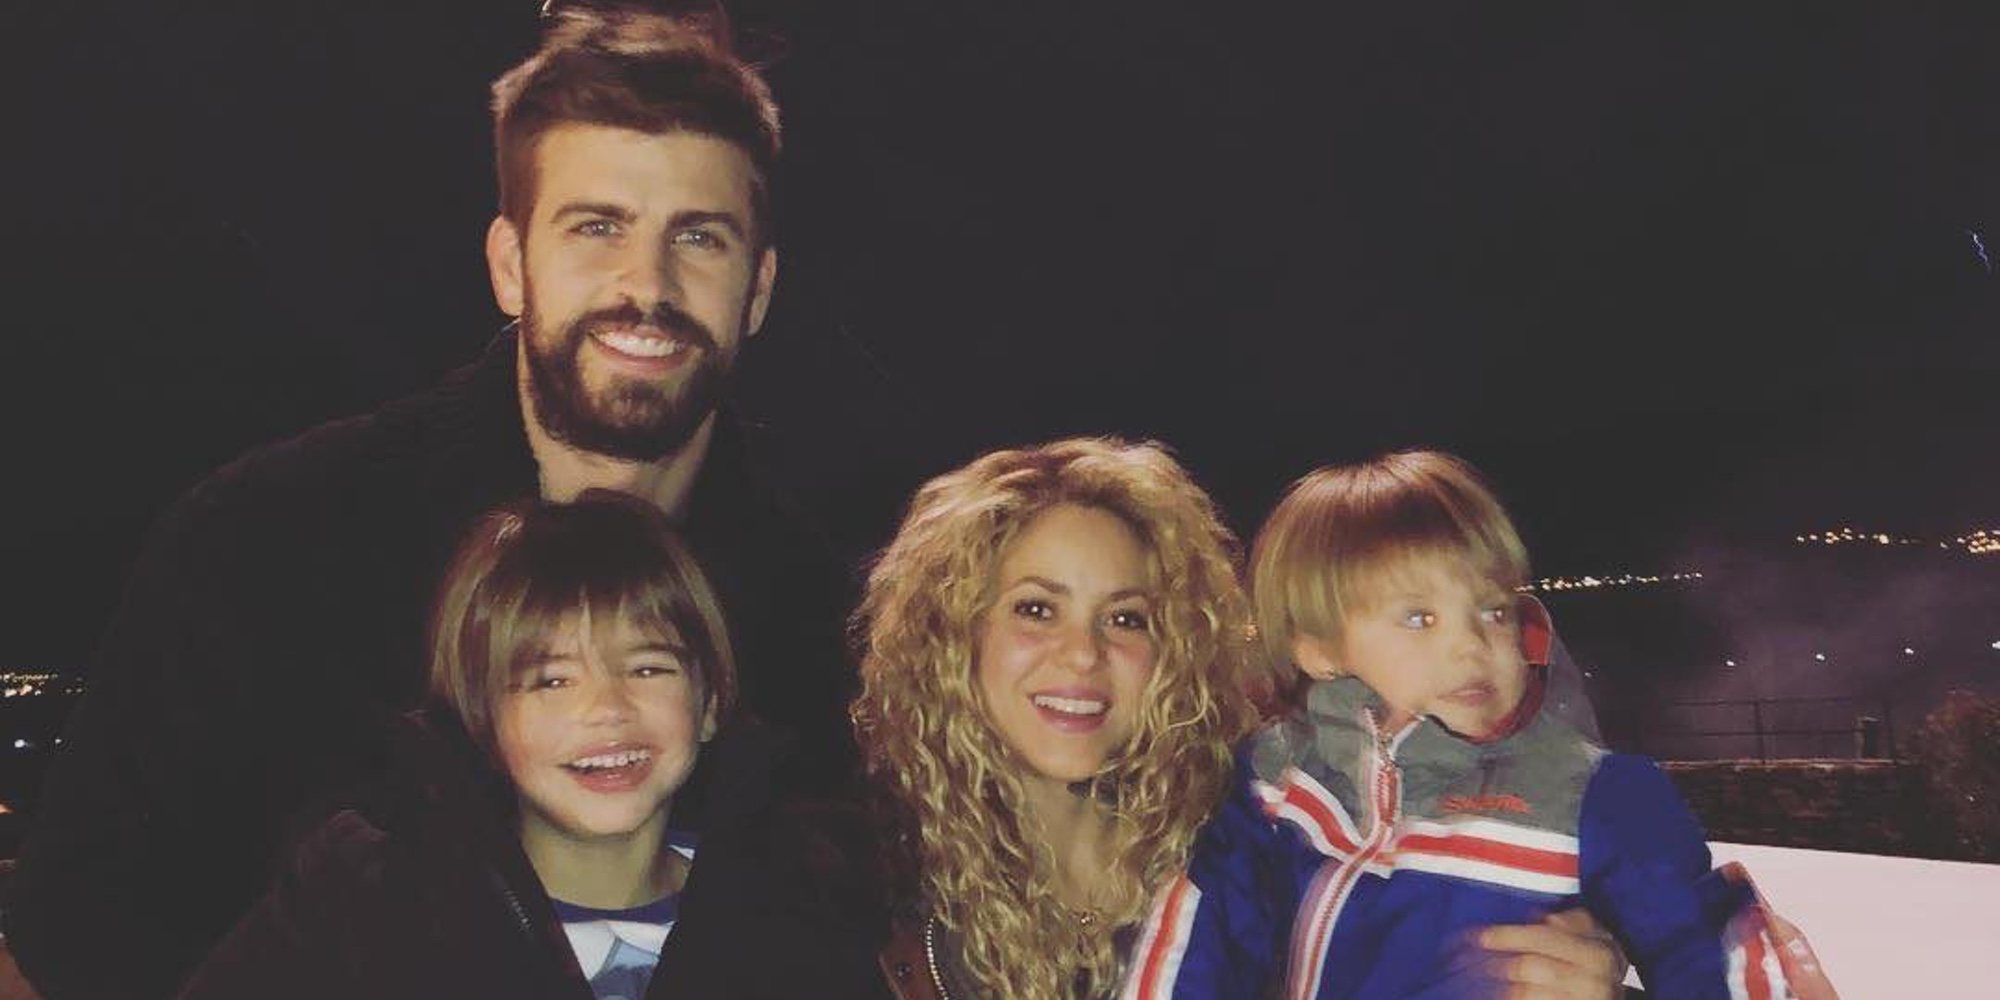 Shakira, sonriente en su felicitación familiar navideña tras sus problemas con Hacienda